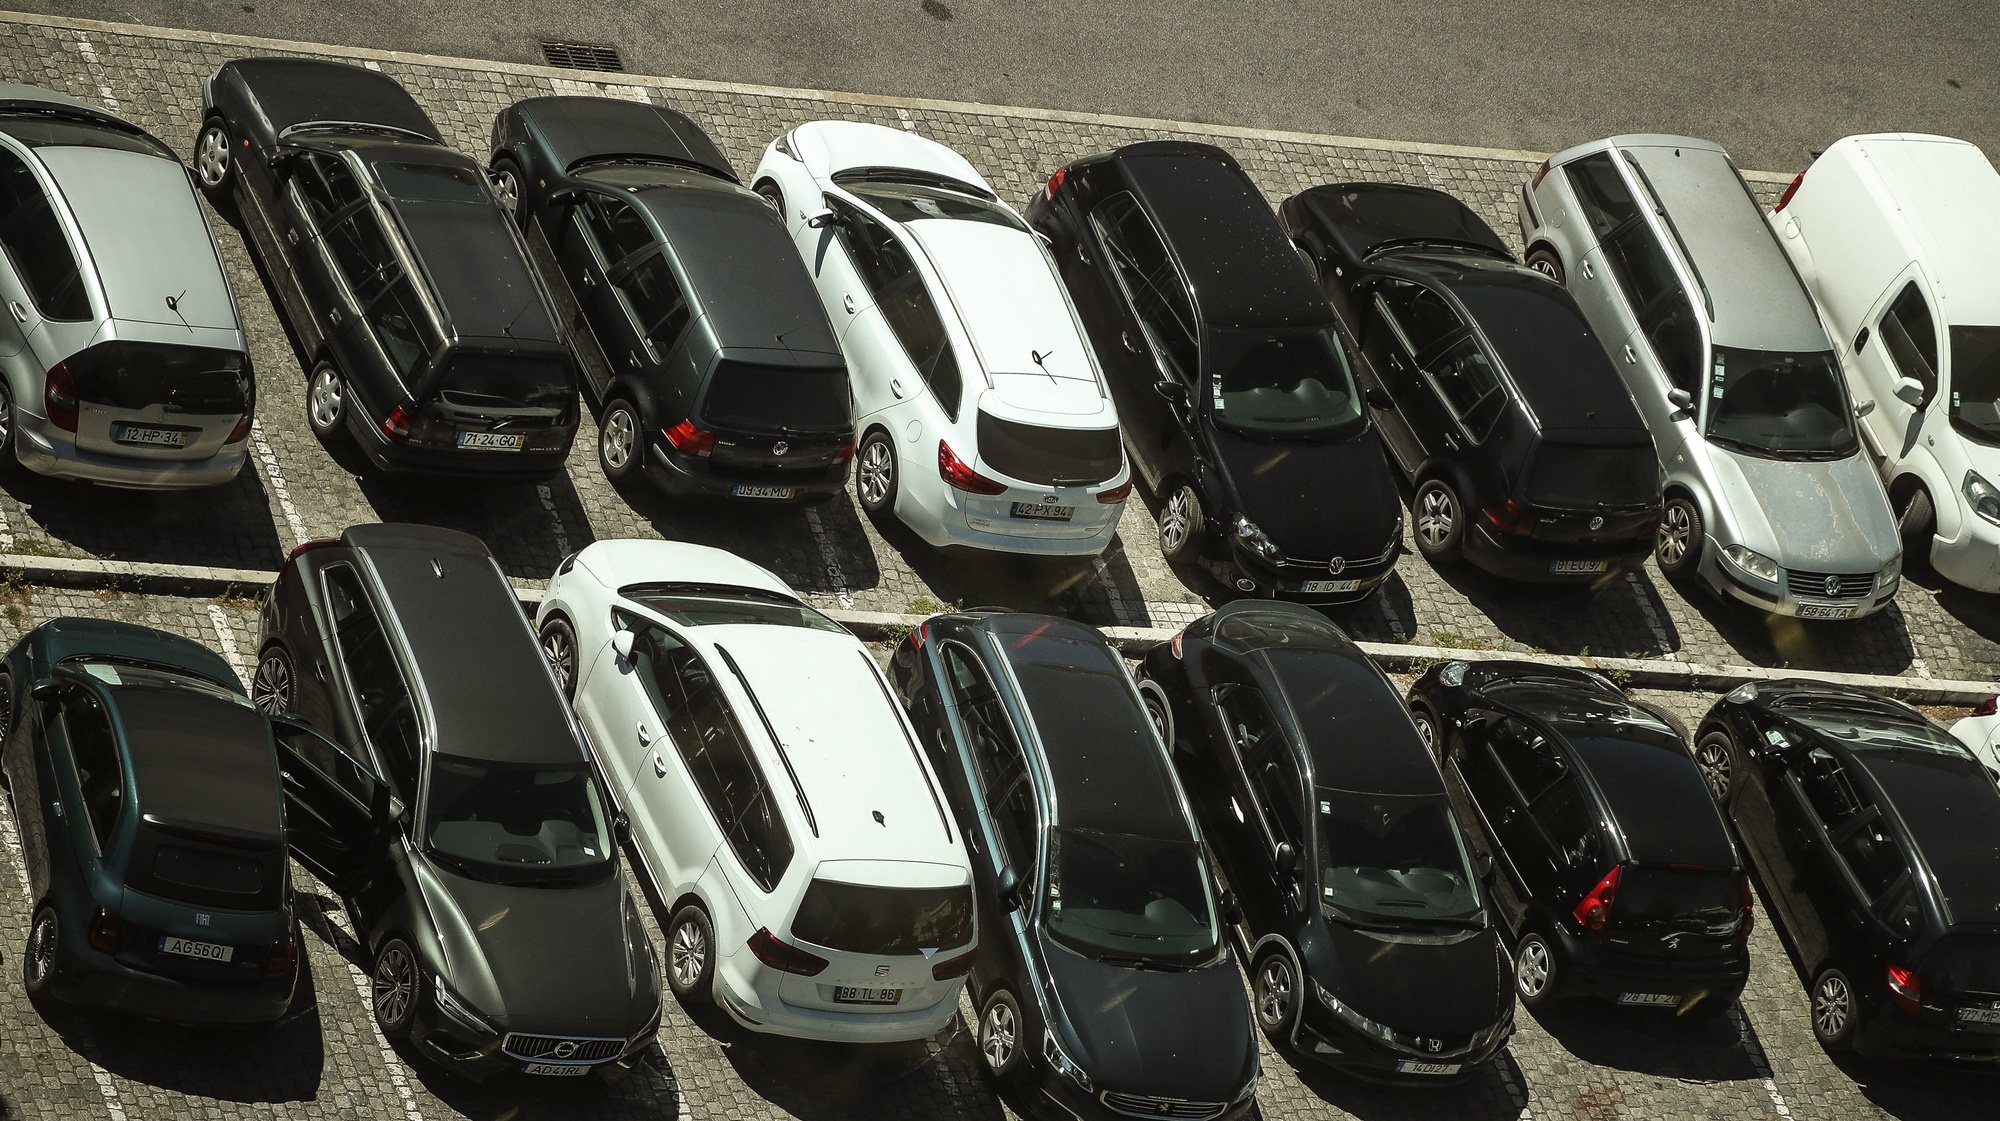 Automóveis estacionados em Lisboa, 2 de julho de 2021. MÁRIO CRUZ/LUSA